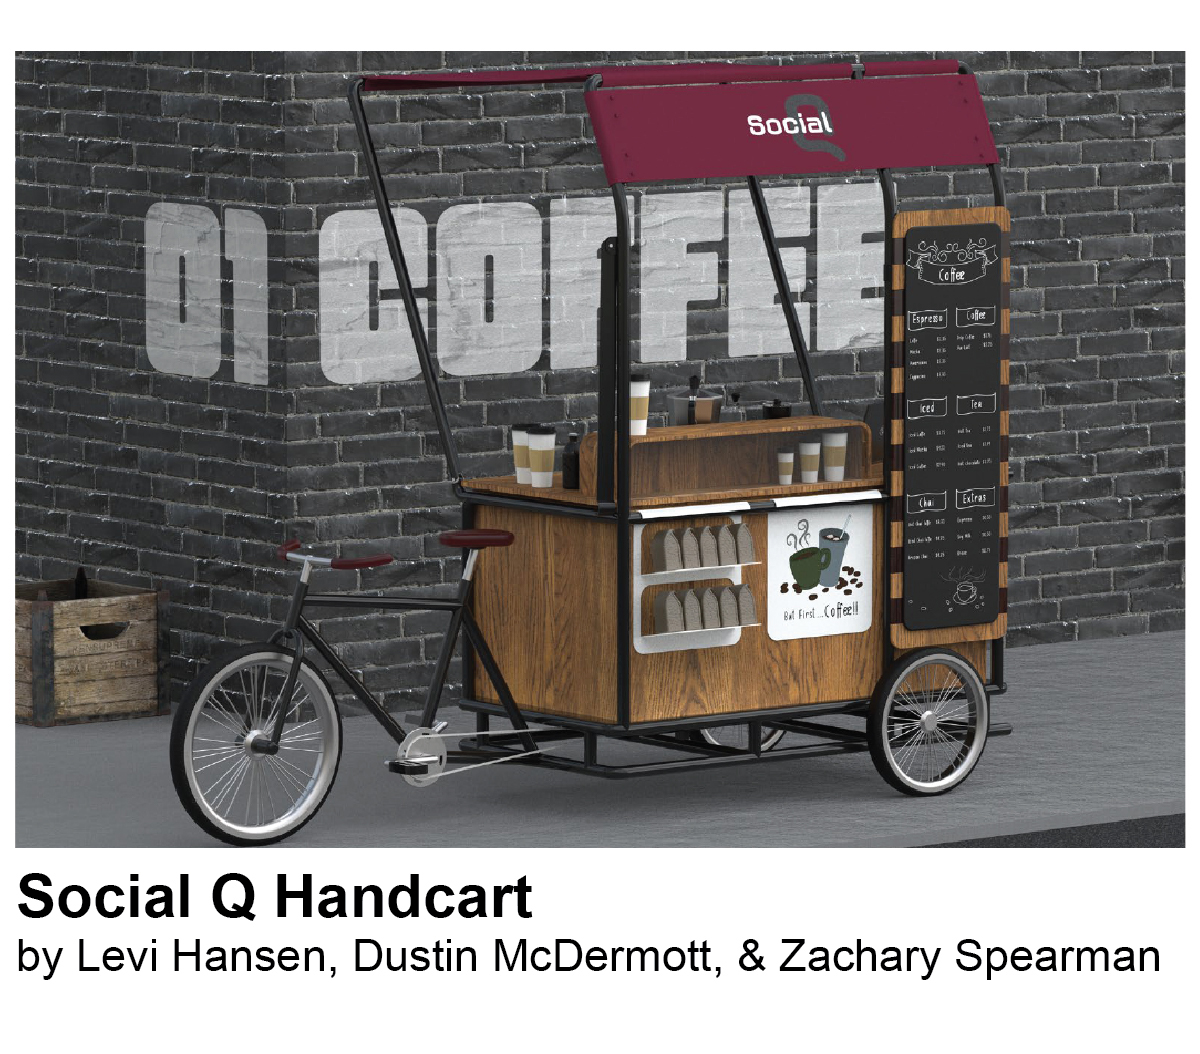 Social Q Handcart by Levi Hansen, Dustin McDermott, & Zachary Spearman